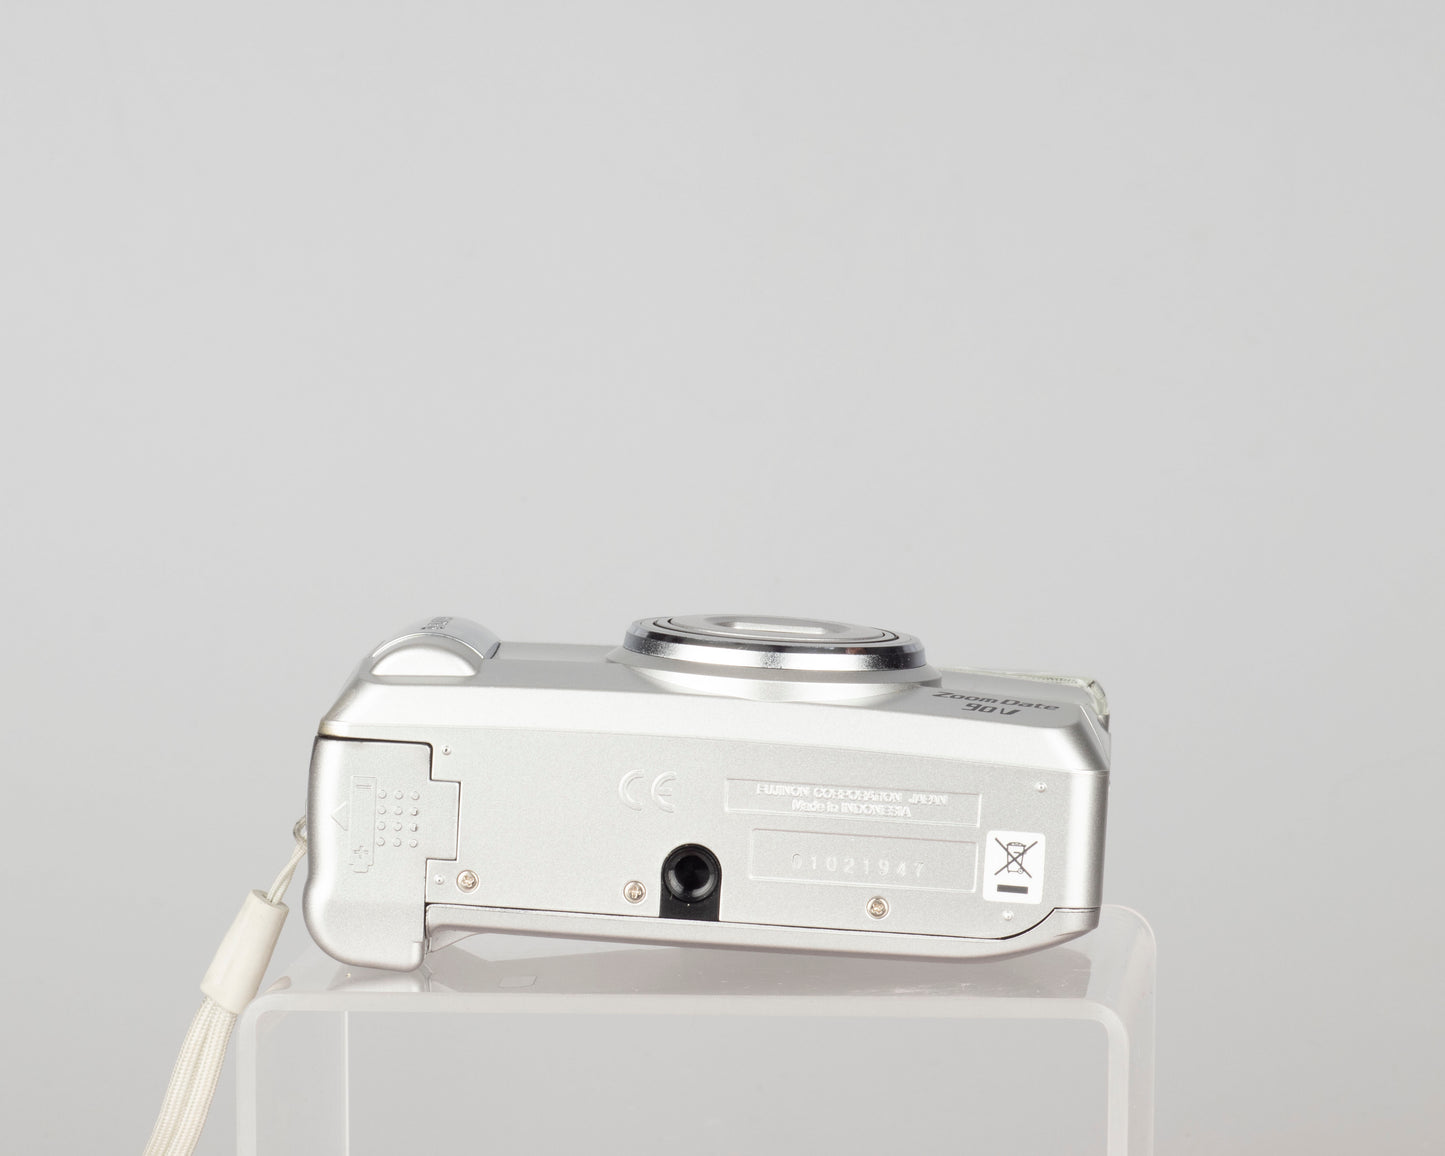 Fujifilm Zoom Date 90V 35mm camera (serial 01021947)